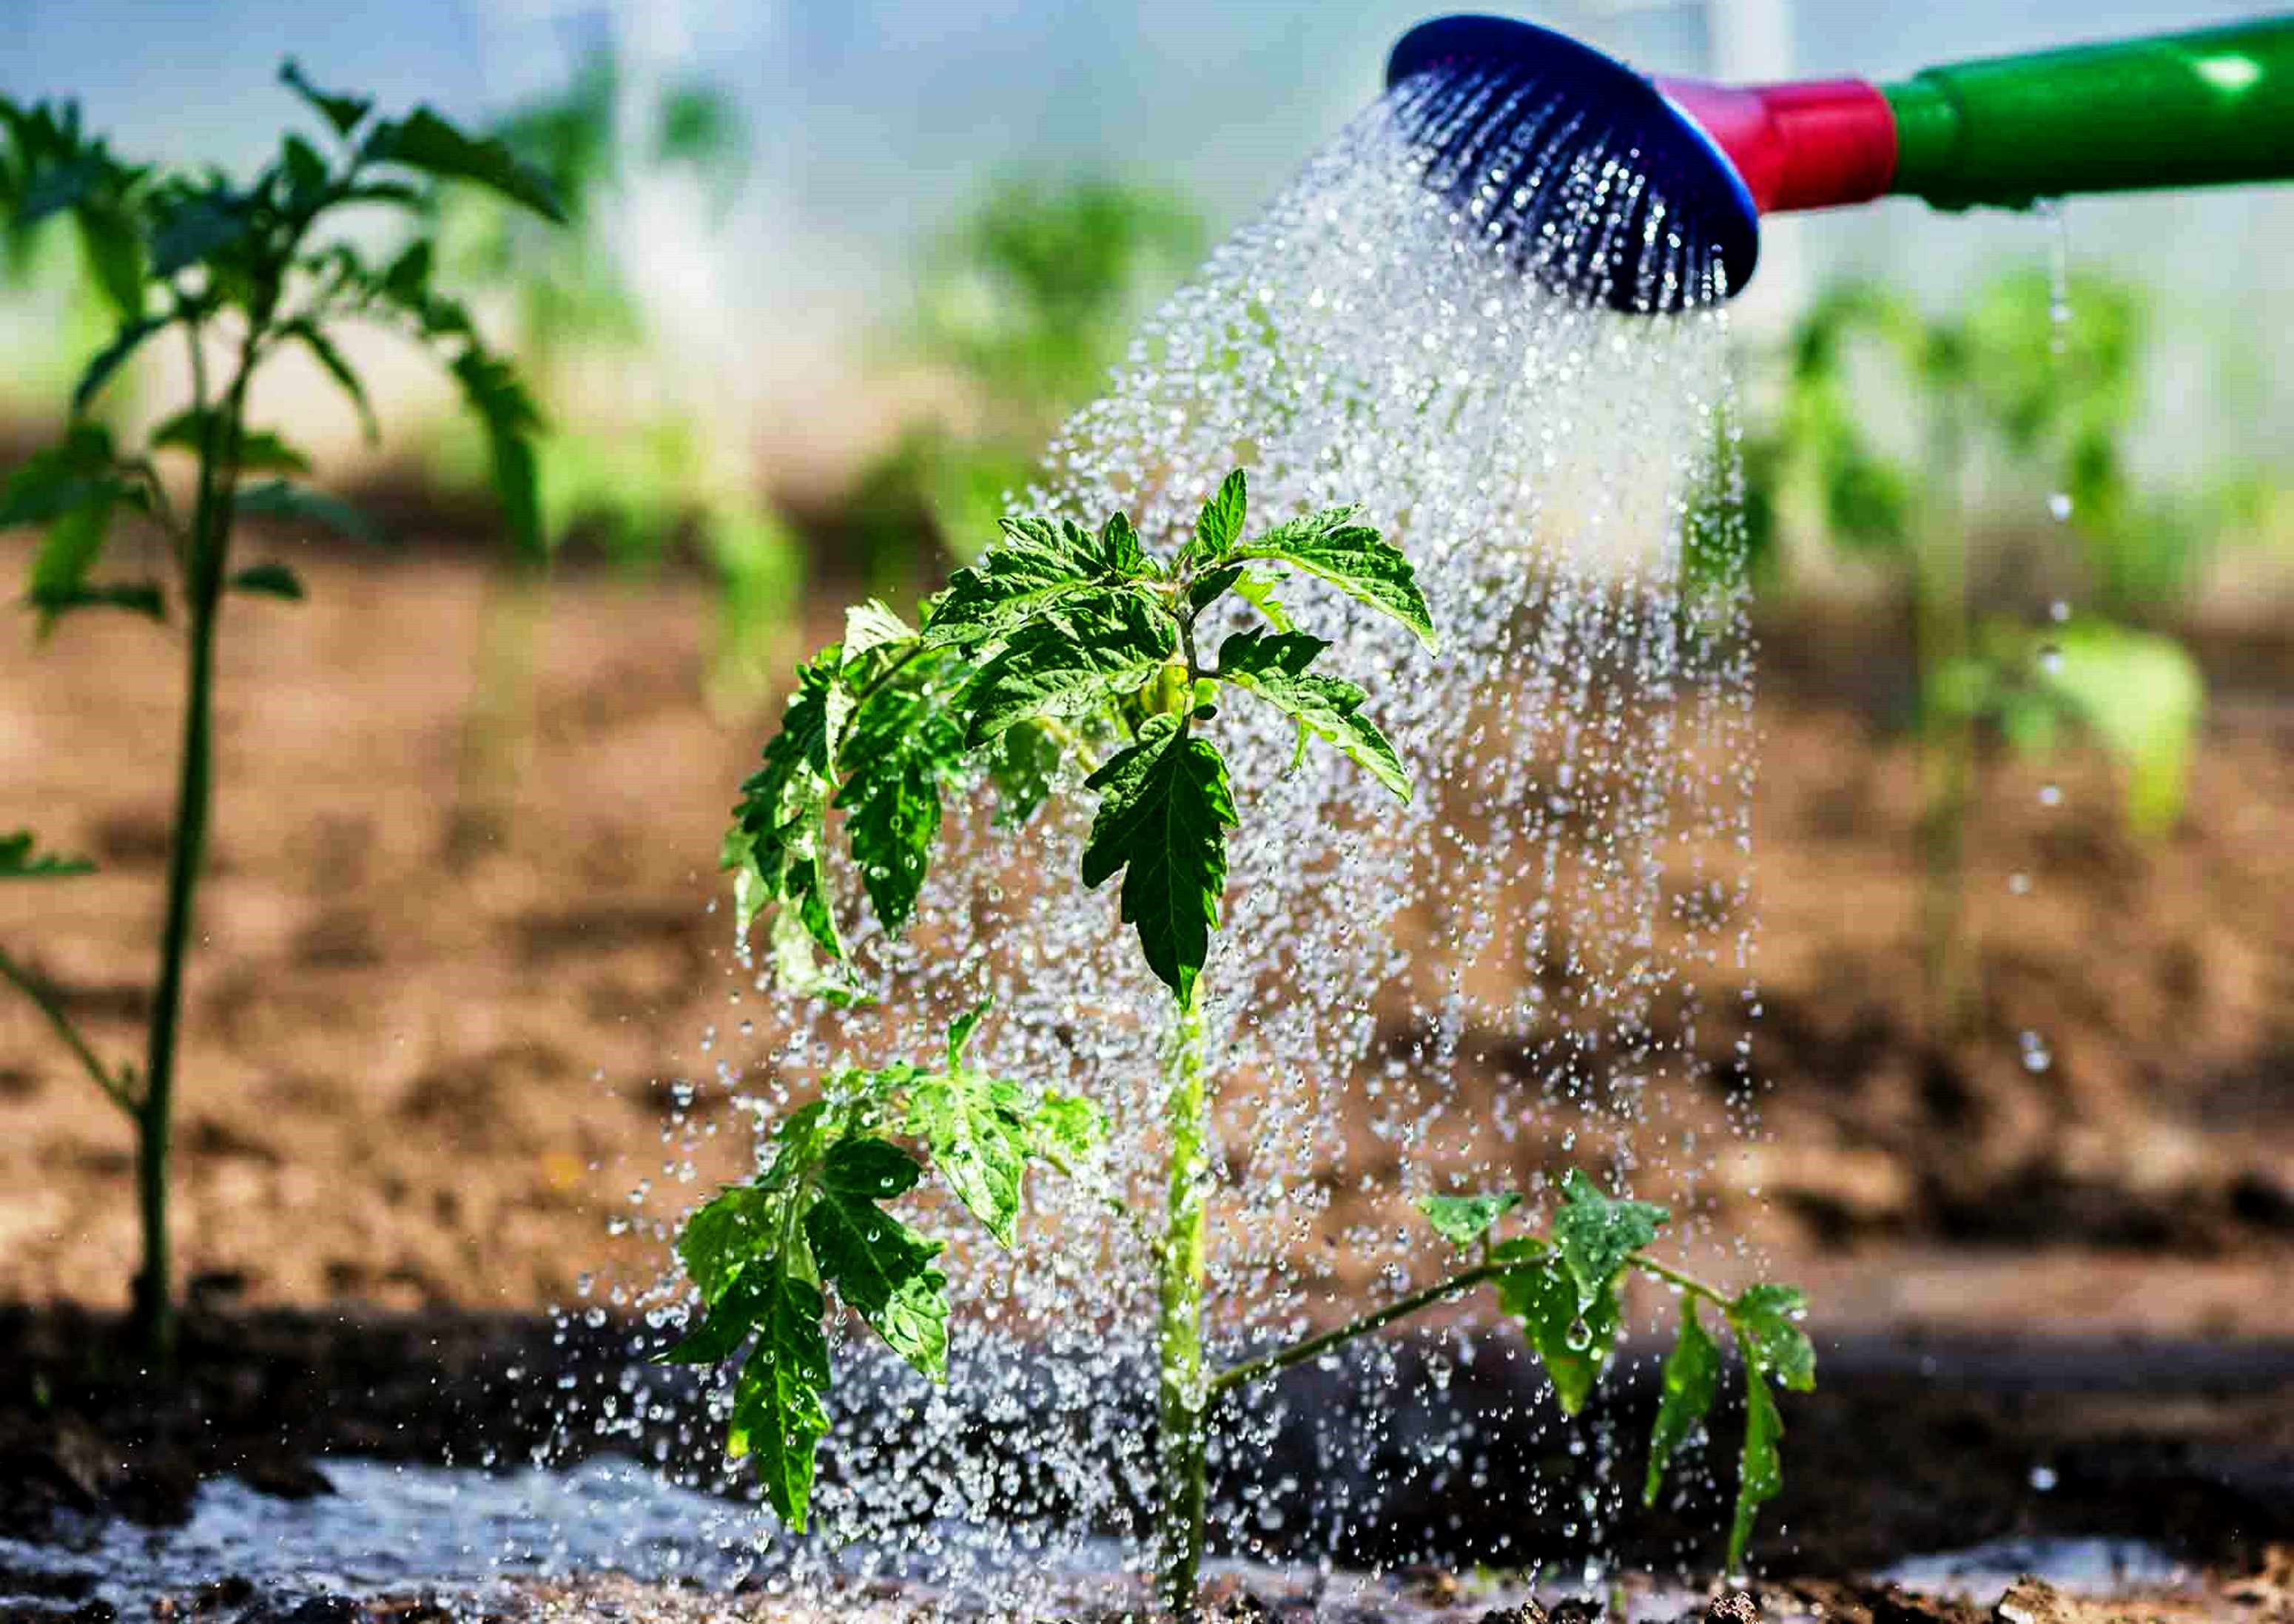 Вода из бассейна для полива растений — вредно ли? | Можно ли поливать водой из бассейна огород, газон, цветы